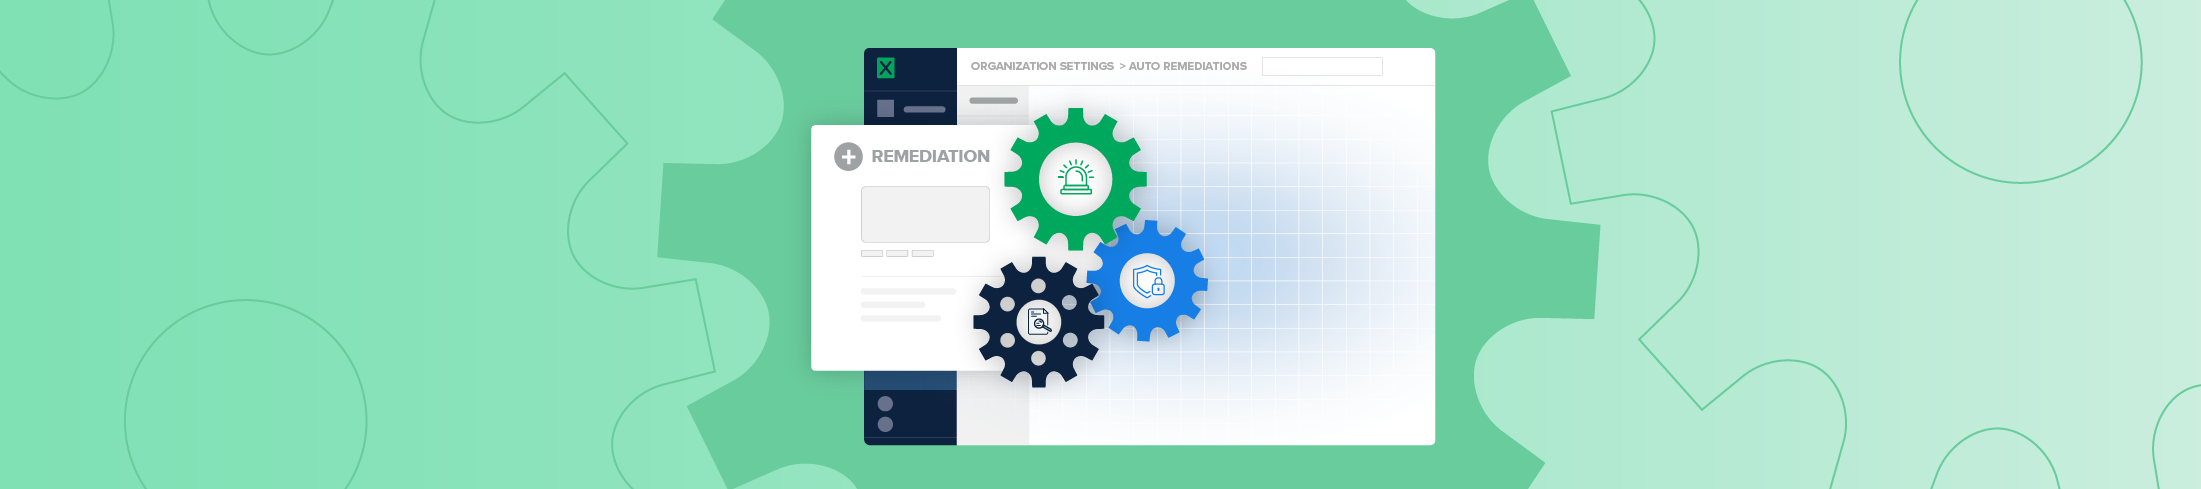 Automated remediation: benefits and customization